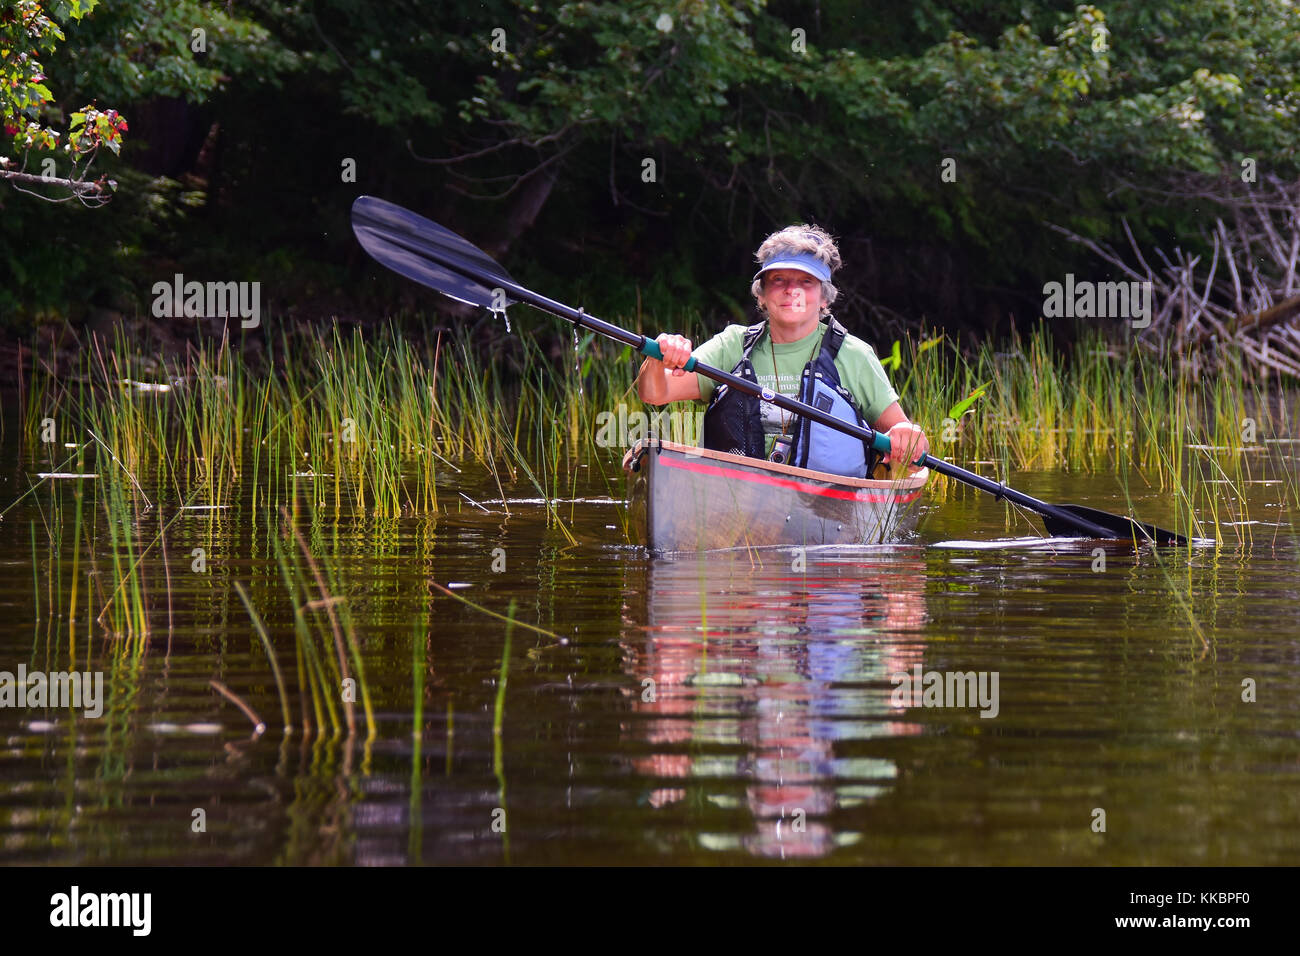 Mature woman paddling a canoe on a remote Adirondacks lake. Stock Photo